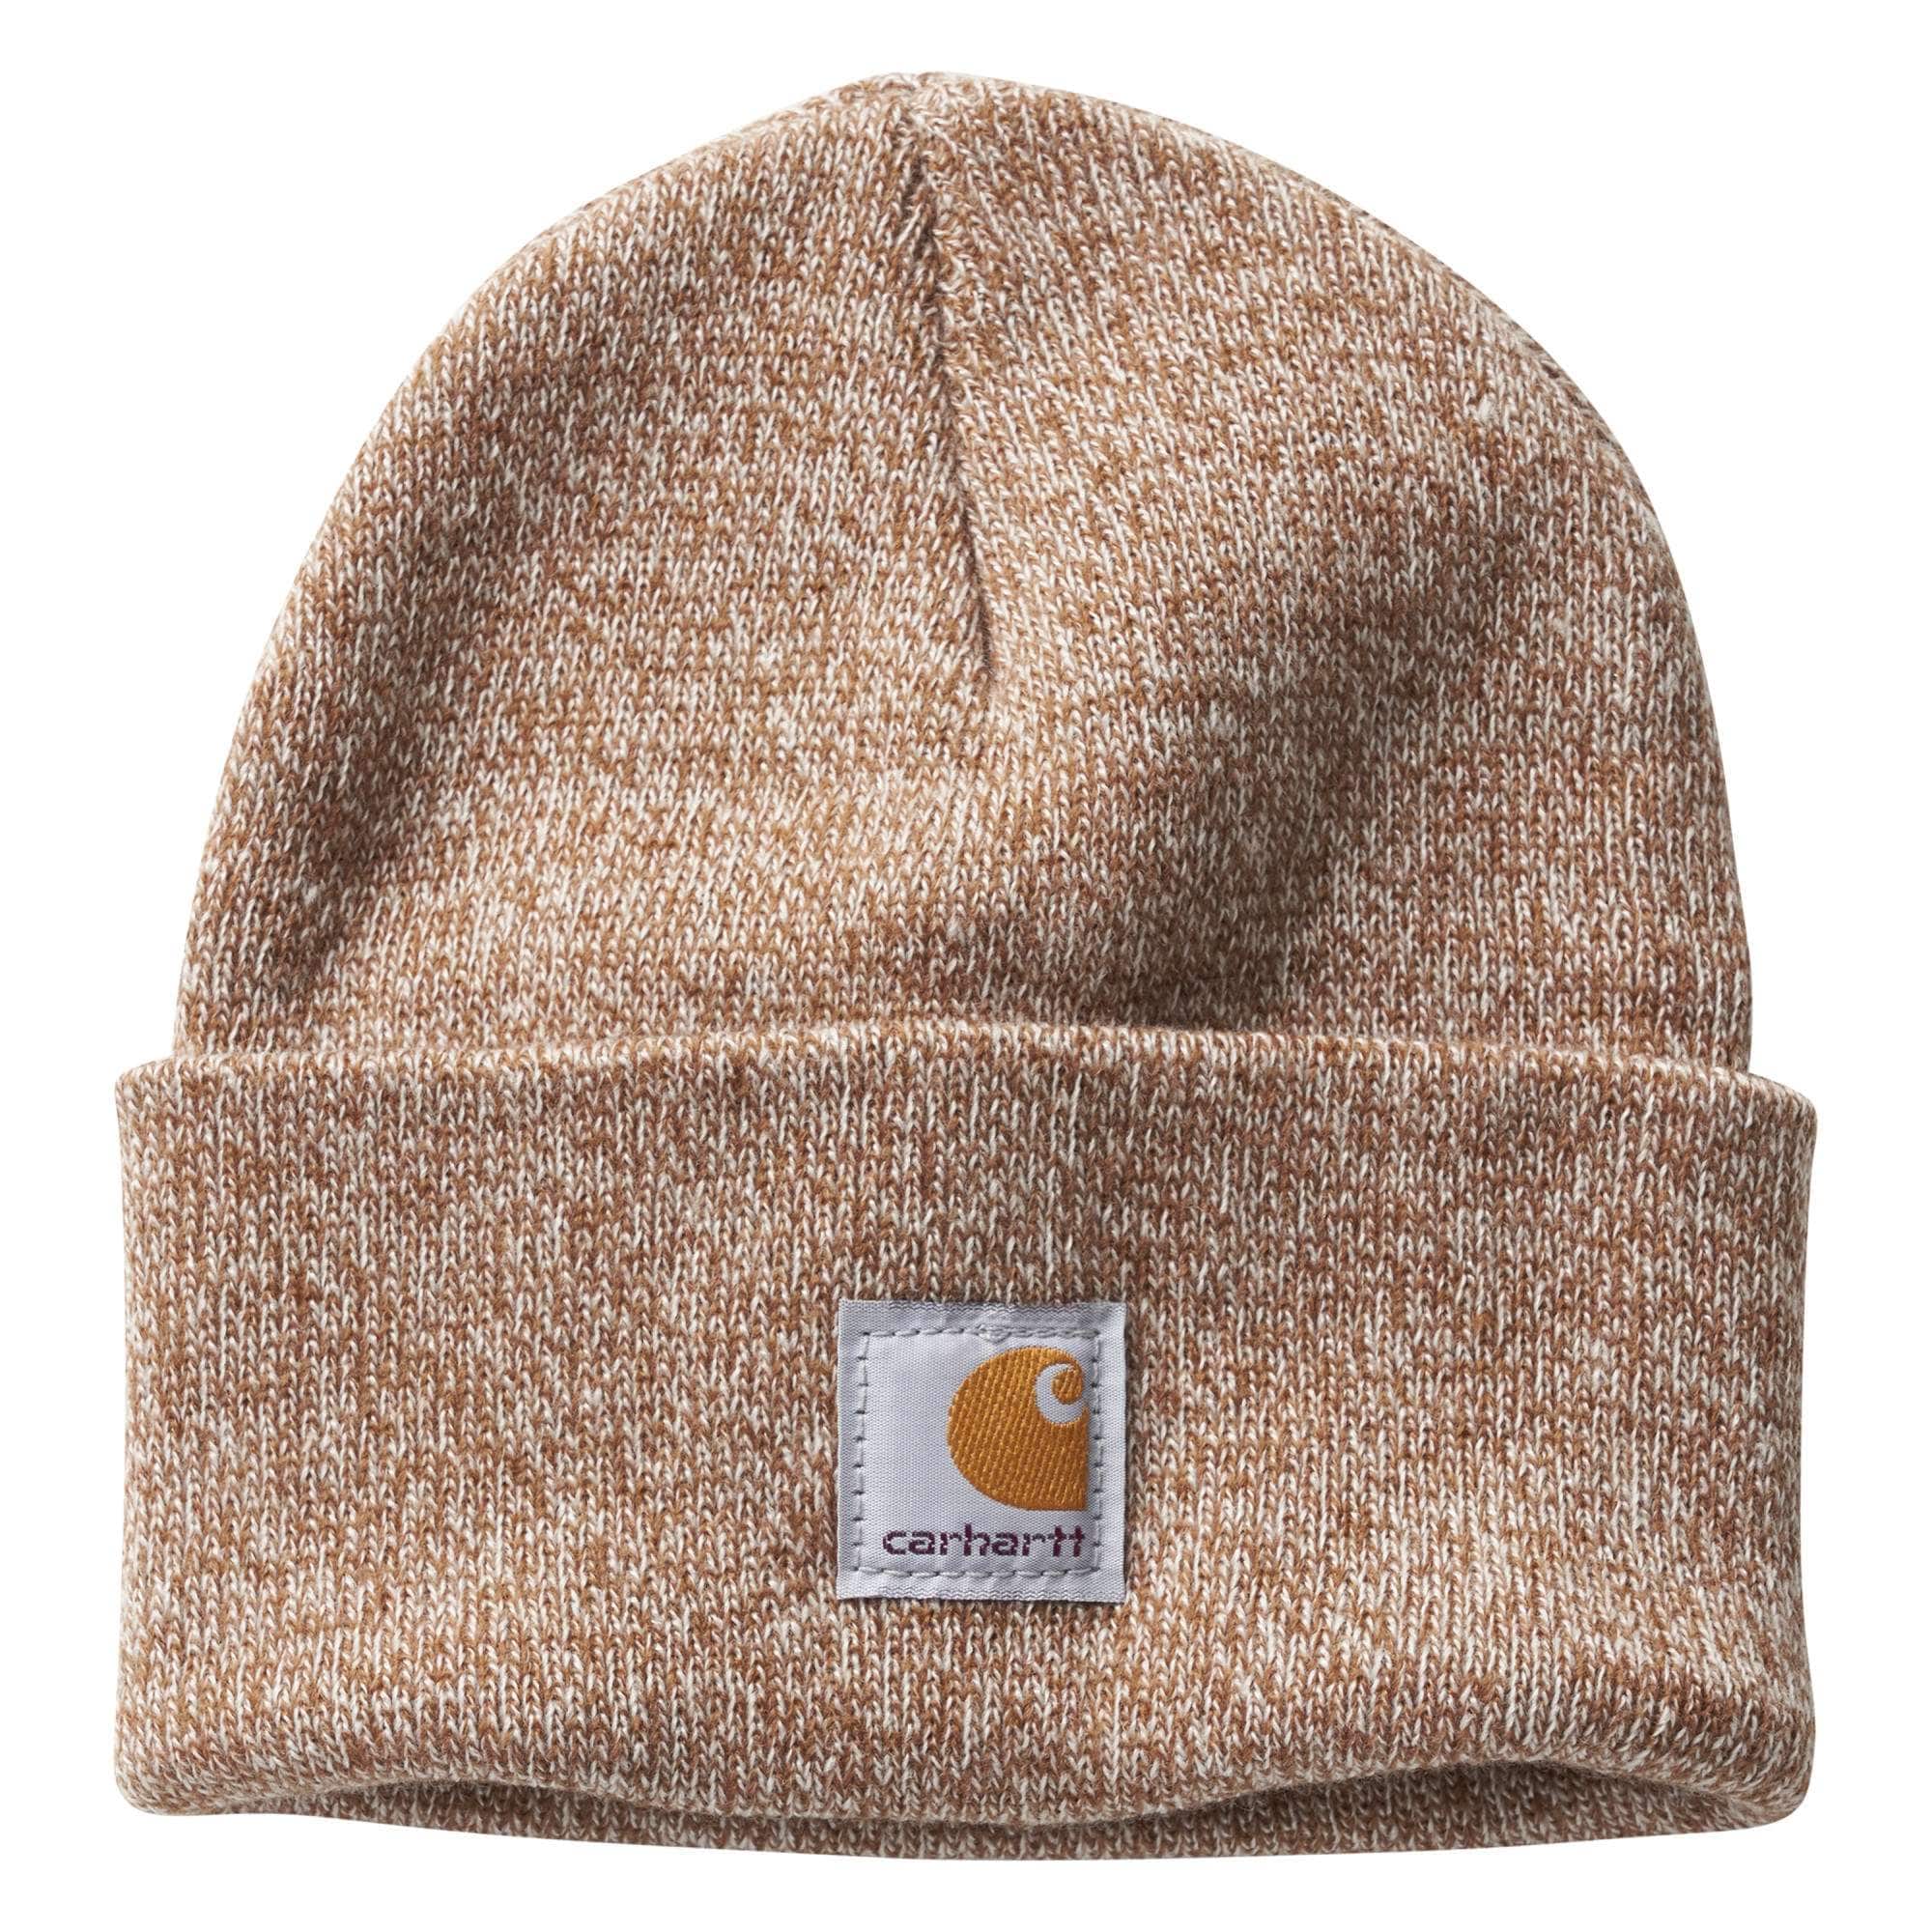 Knit Hats, Beanies, Winter Hats, & Watch Caps | Carhartt